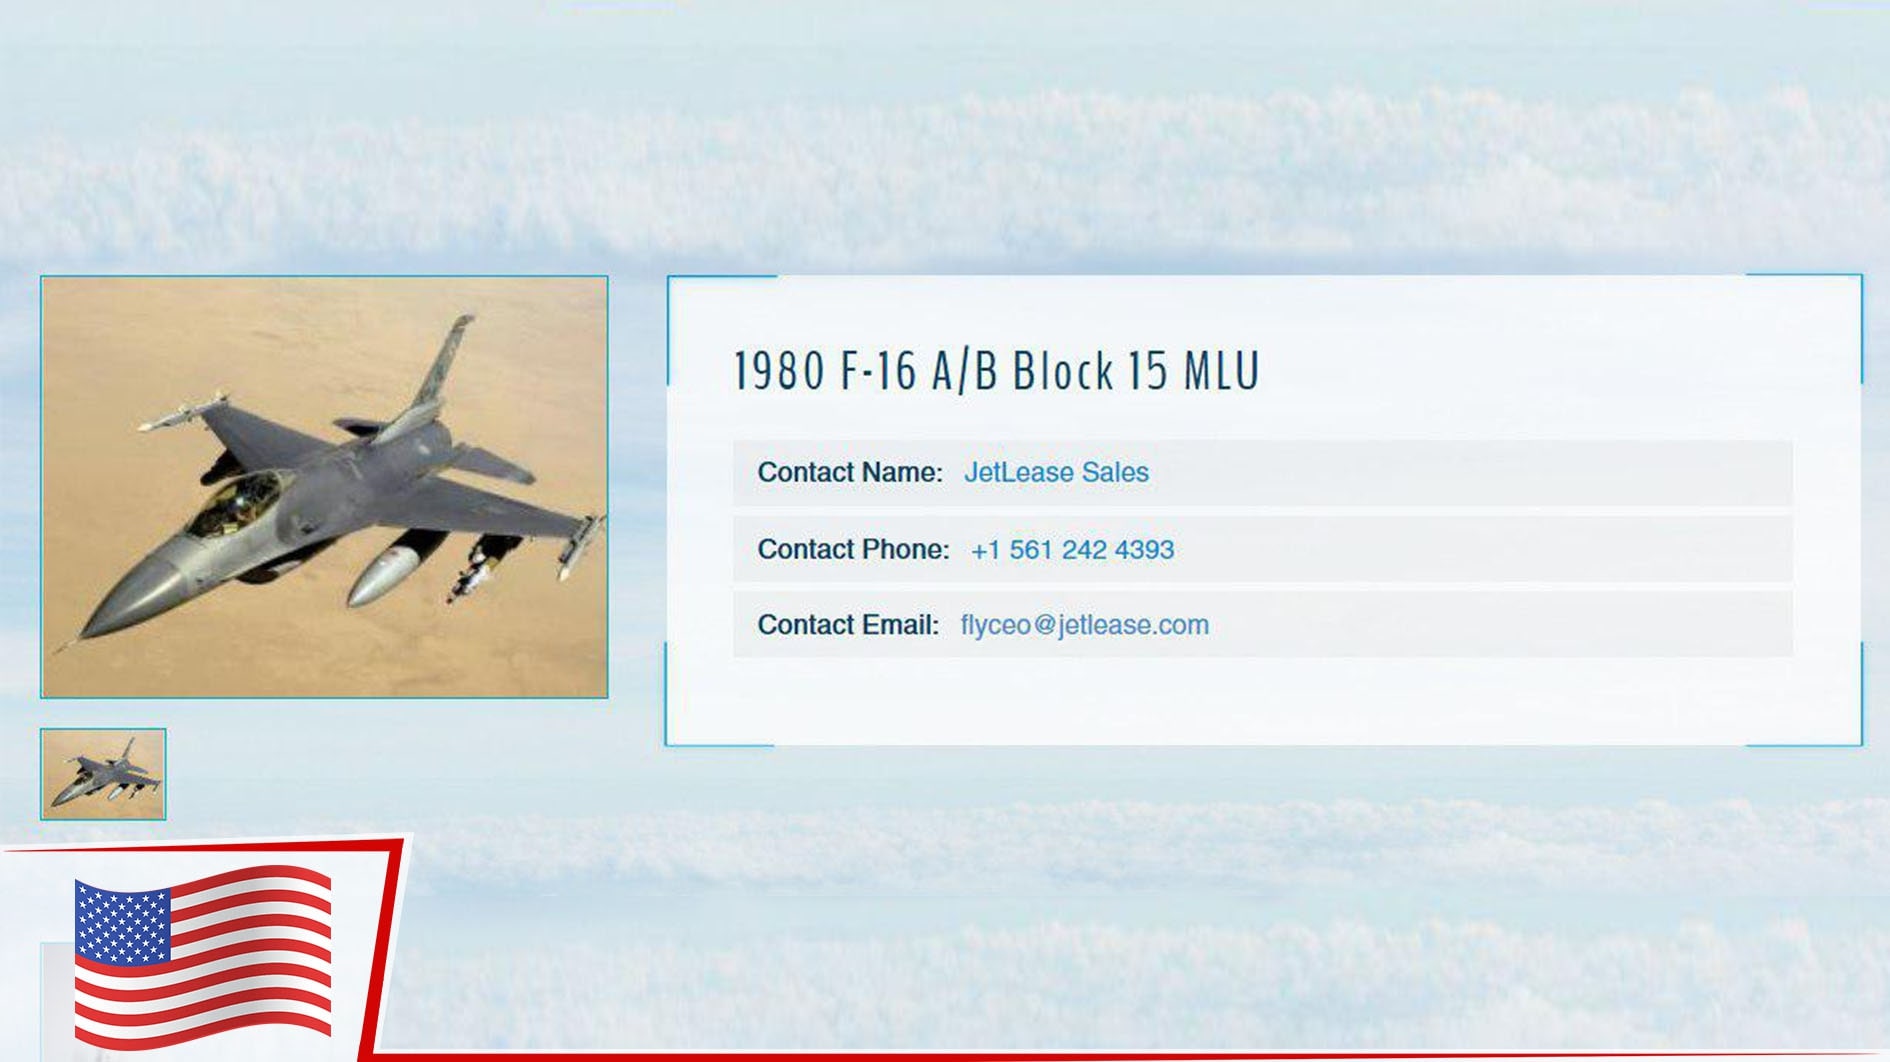 Sahibinden, az kullanılmış, ikinci el F-16 jet uçağı, fiyat makul